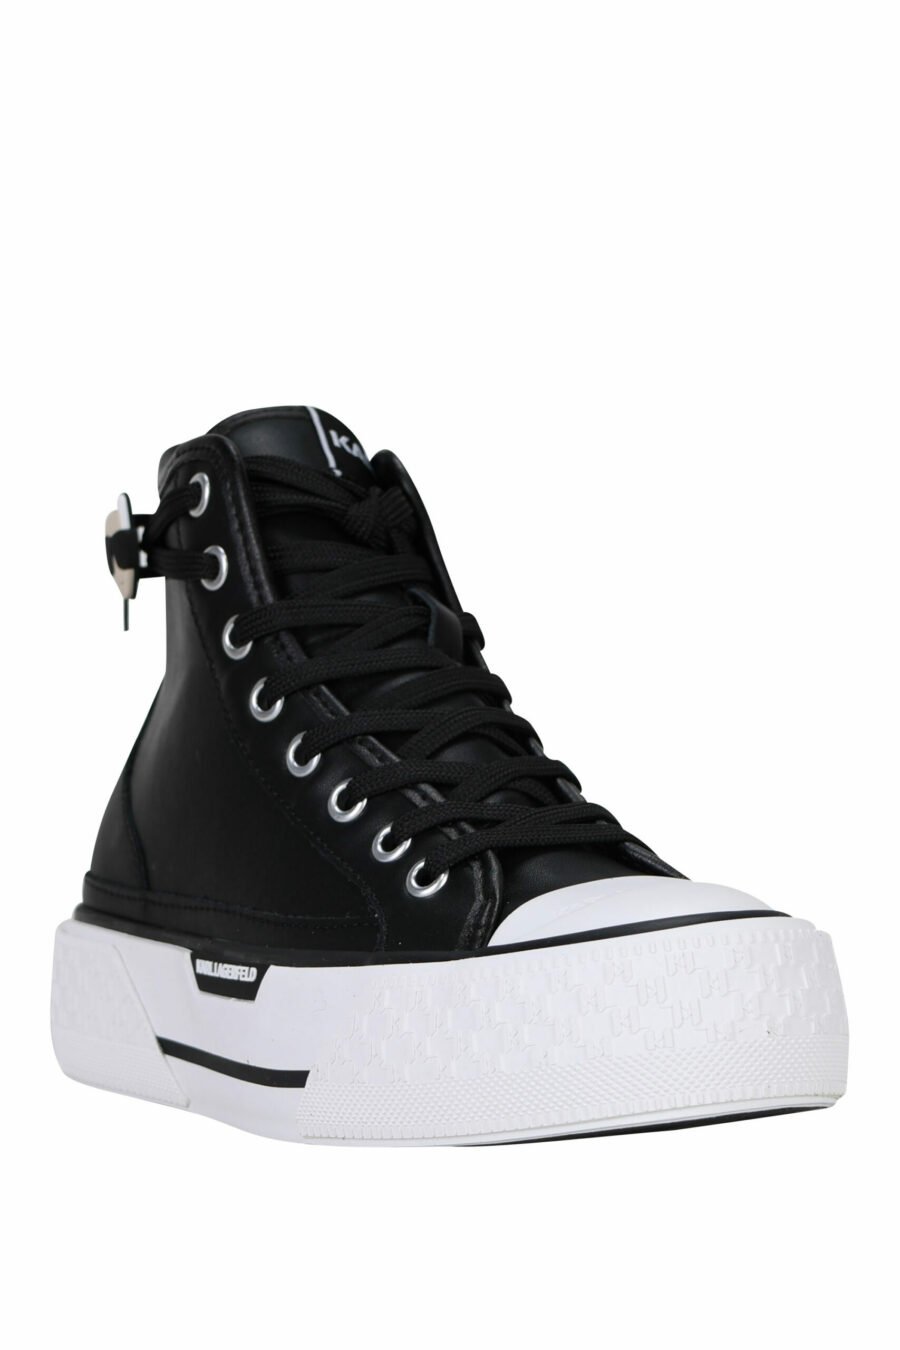 Zapatillas negras altas de cuero con suela blanca y logo "karl" - 5059529355905 1 scaled